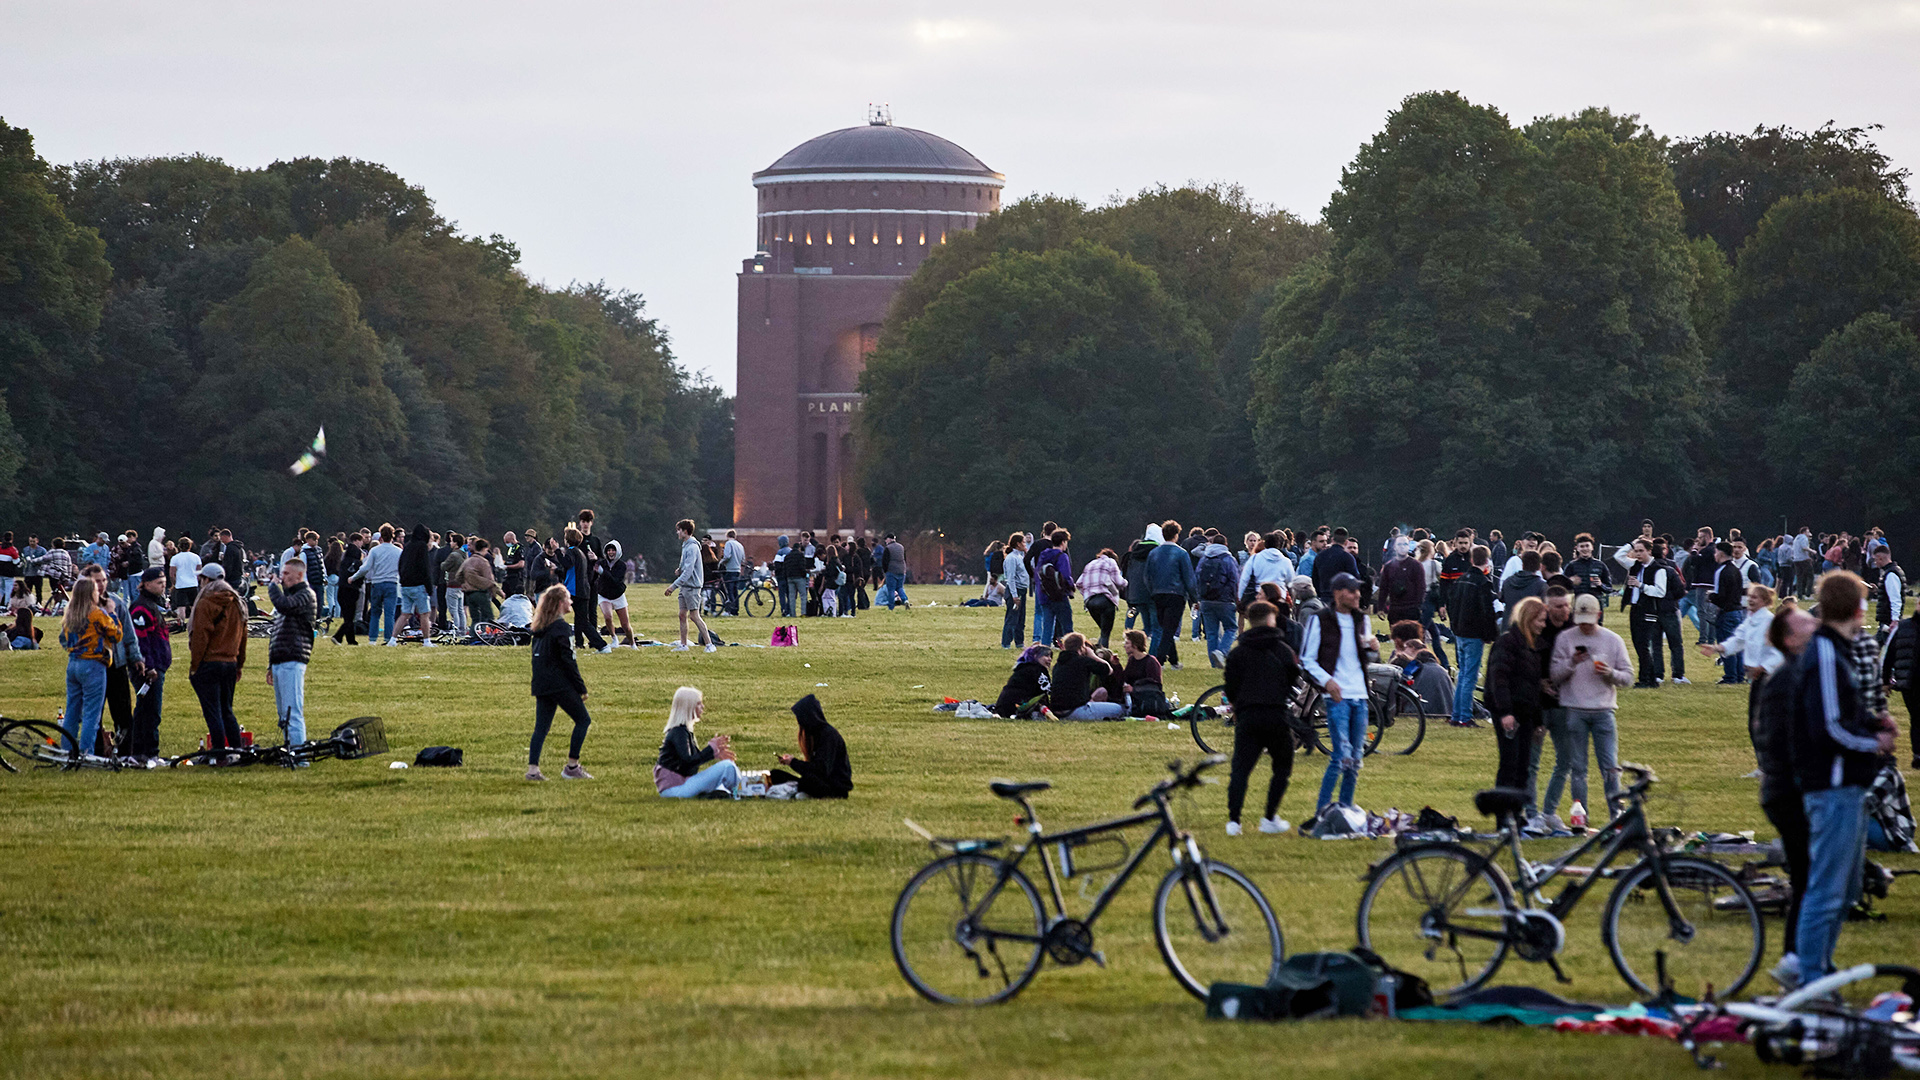 Zahlreiche Jugendliche versammeln sich im Stadtpark in Hamburg. Im Hintergrund ist das Planetarium zu sehen.  | picture alliance/dpa